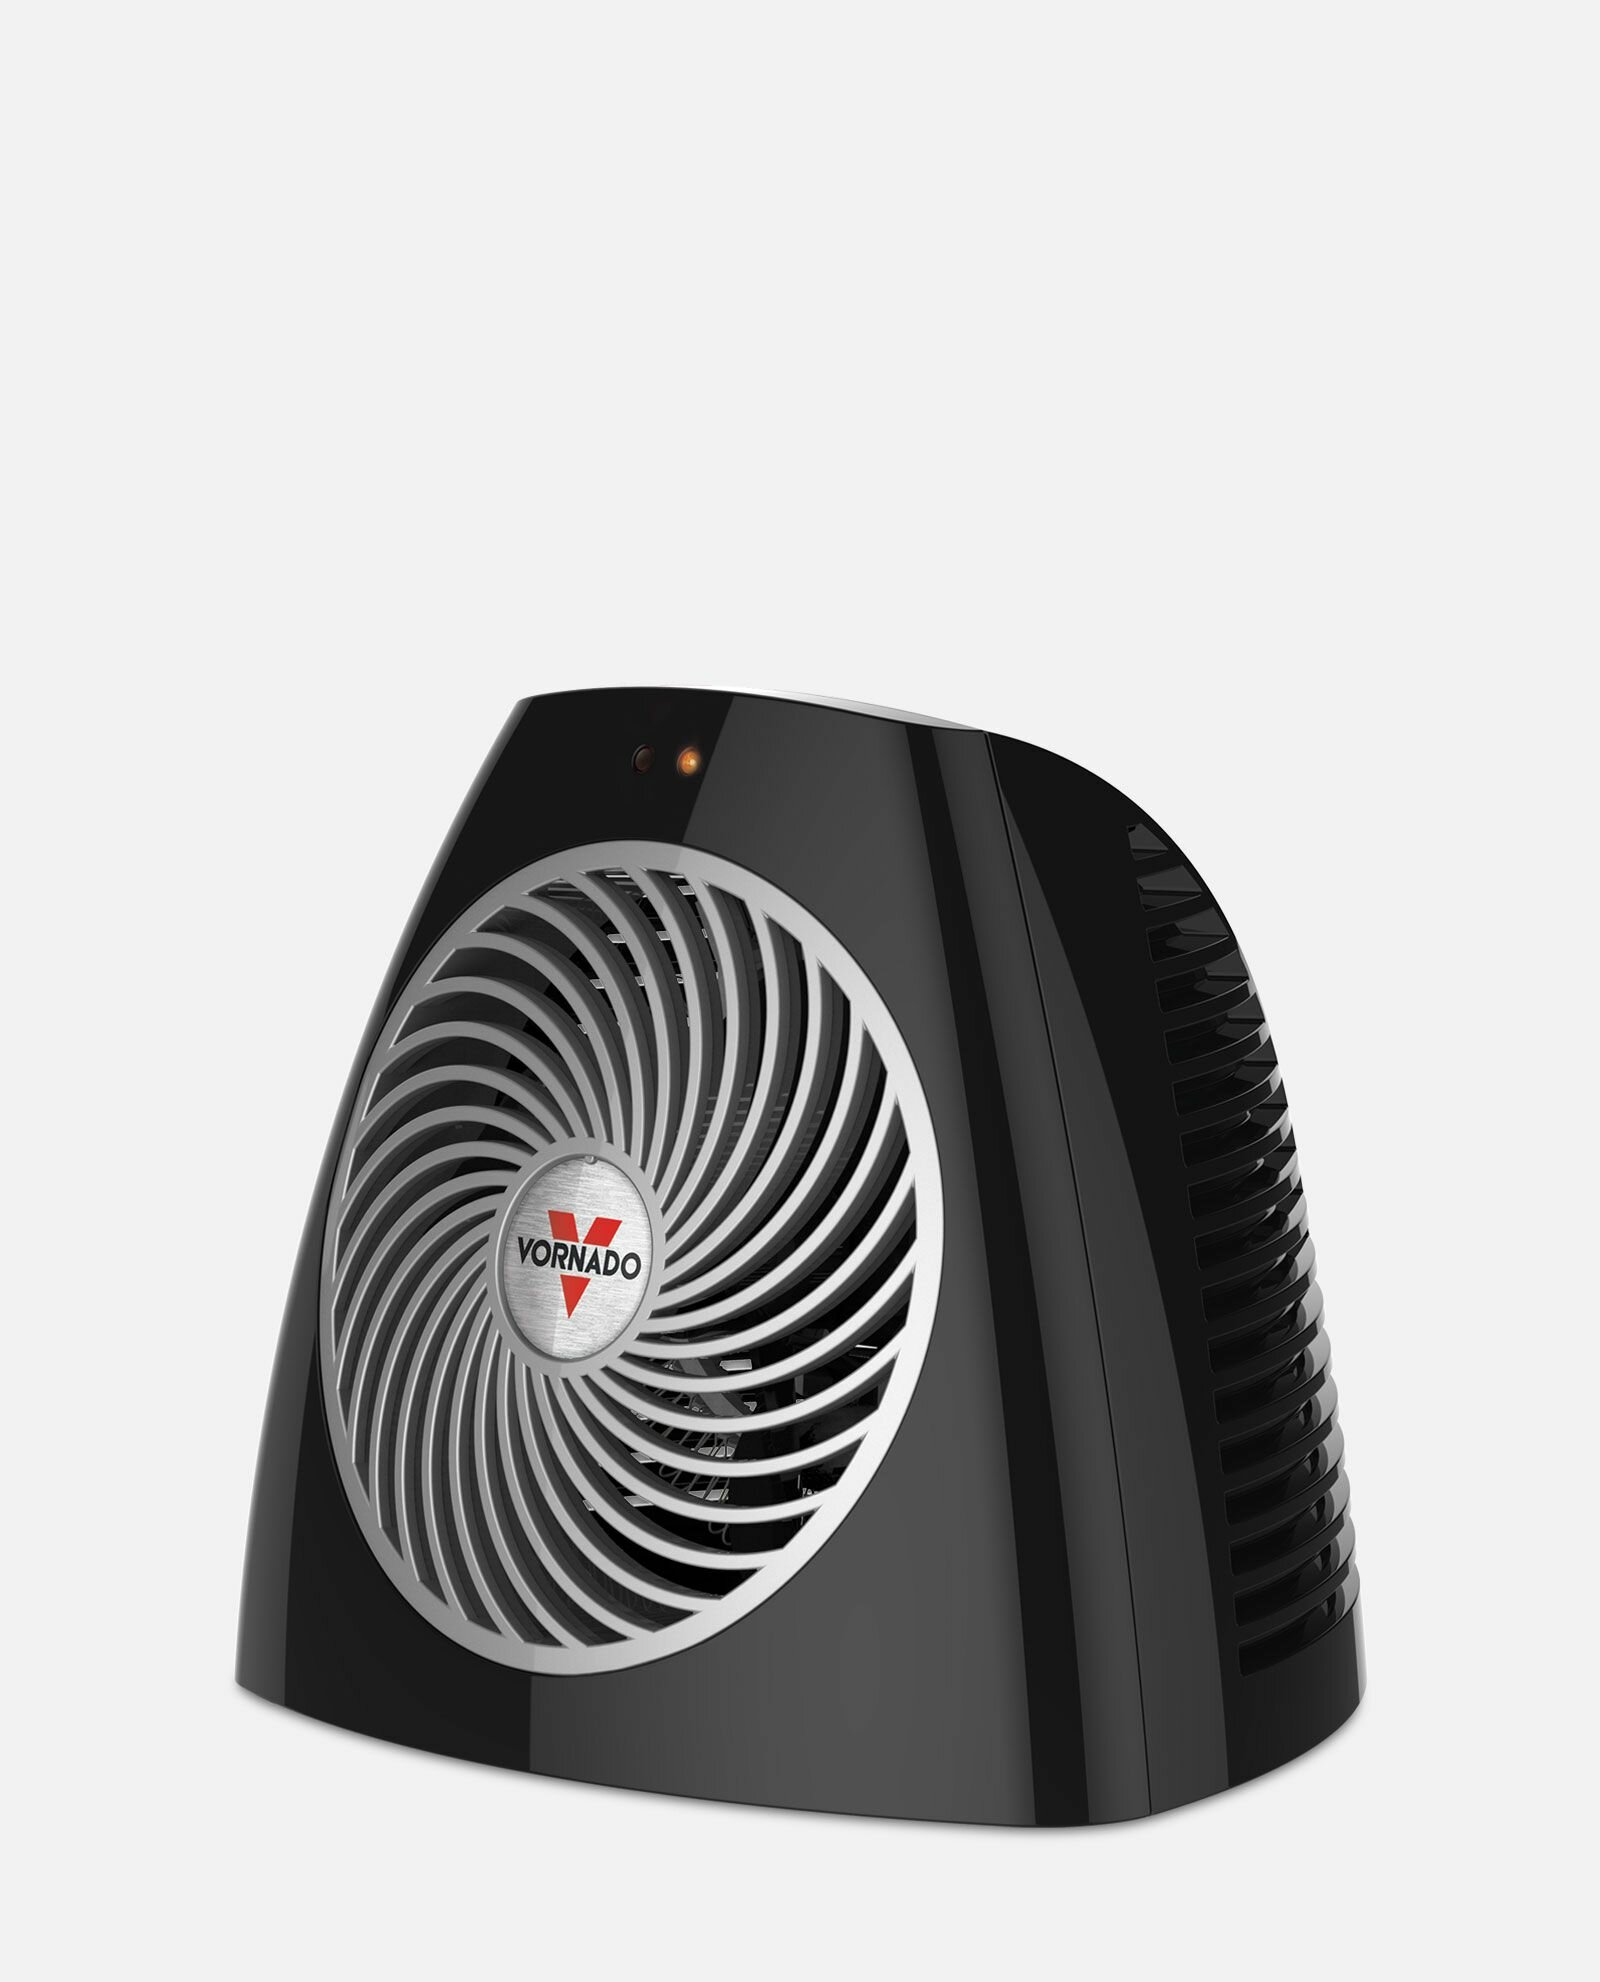 https://assets.wfcdn.com/im/52854320/compr-r85/4243/42433705/vh202-personal-space-heater.jpg